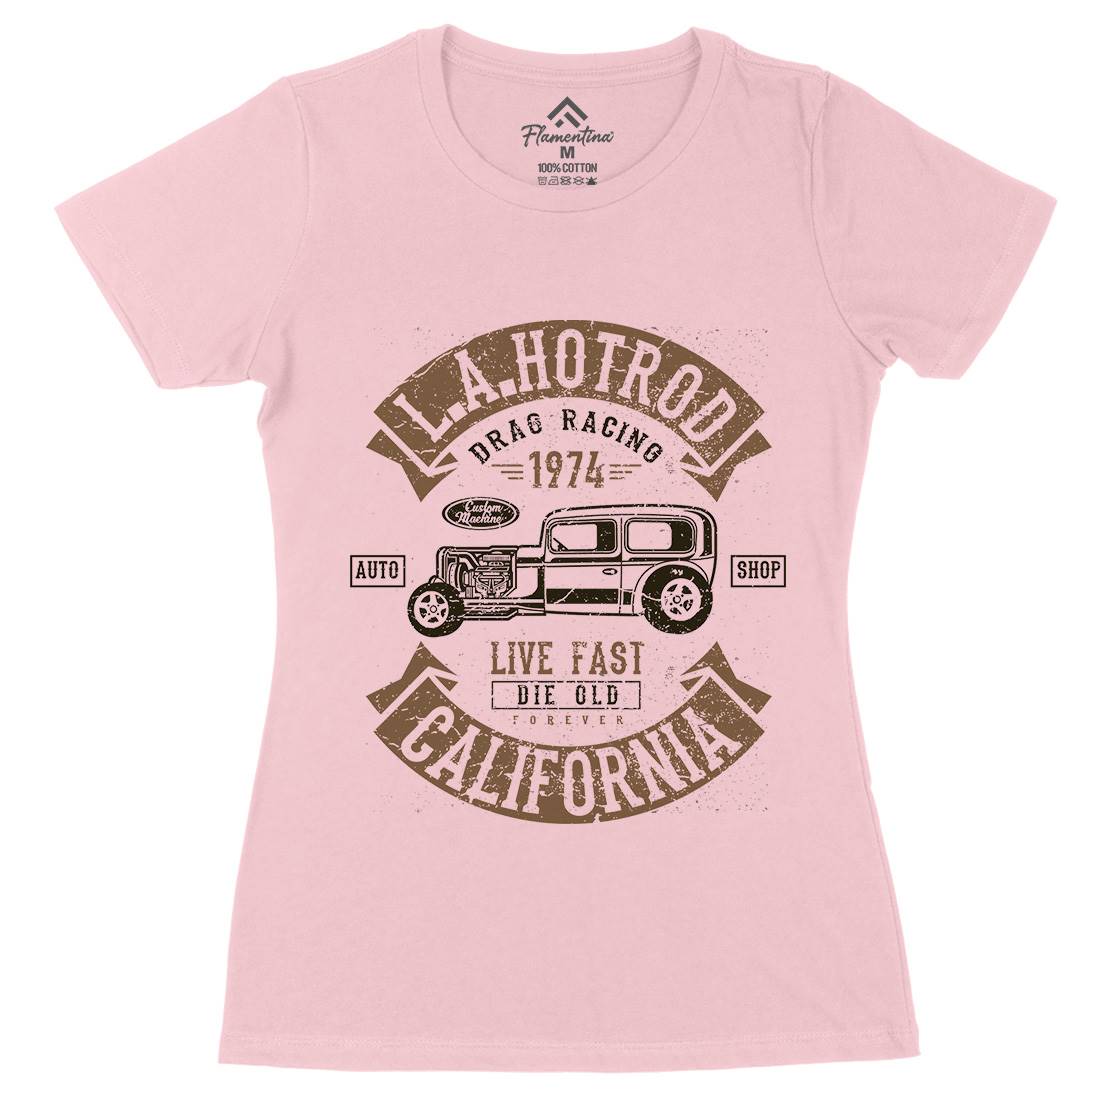 La Hotrod Womens Organic Crew Neck T-Shirt Cars A080